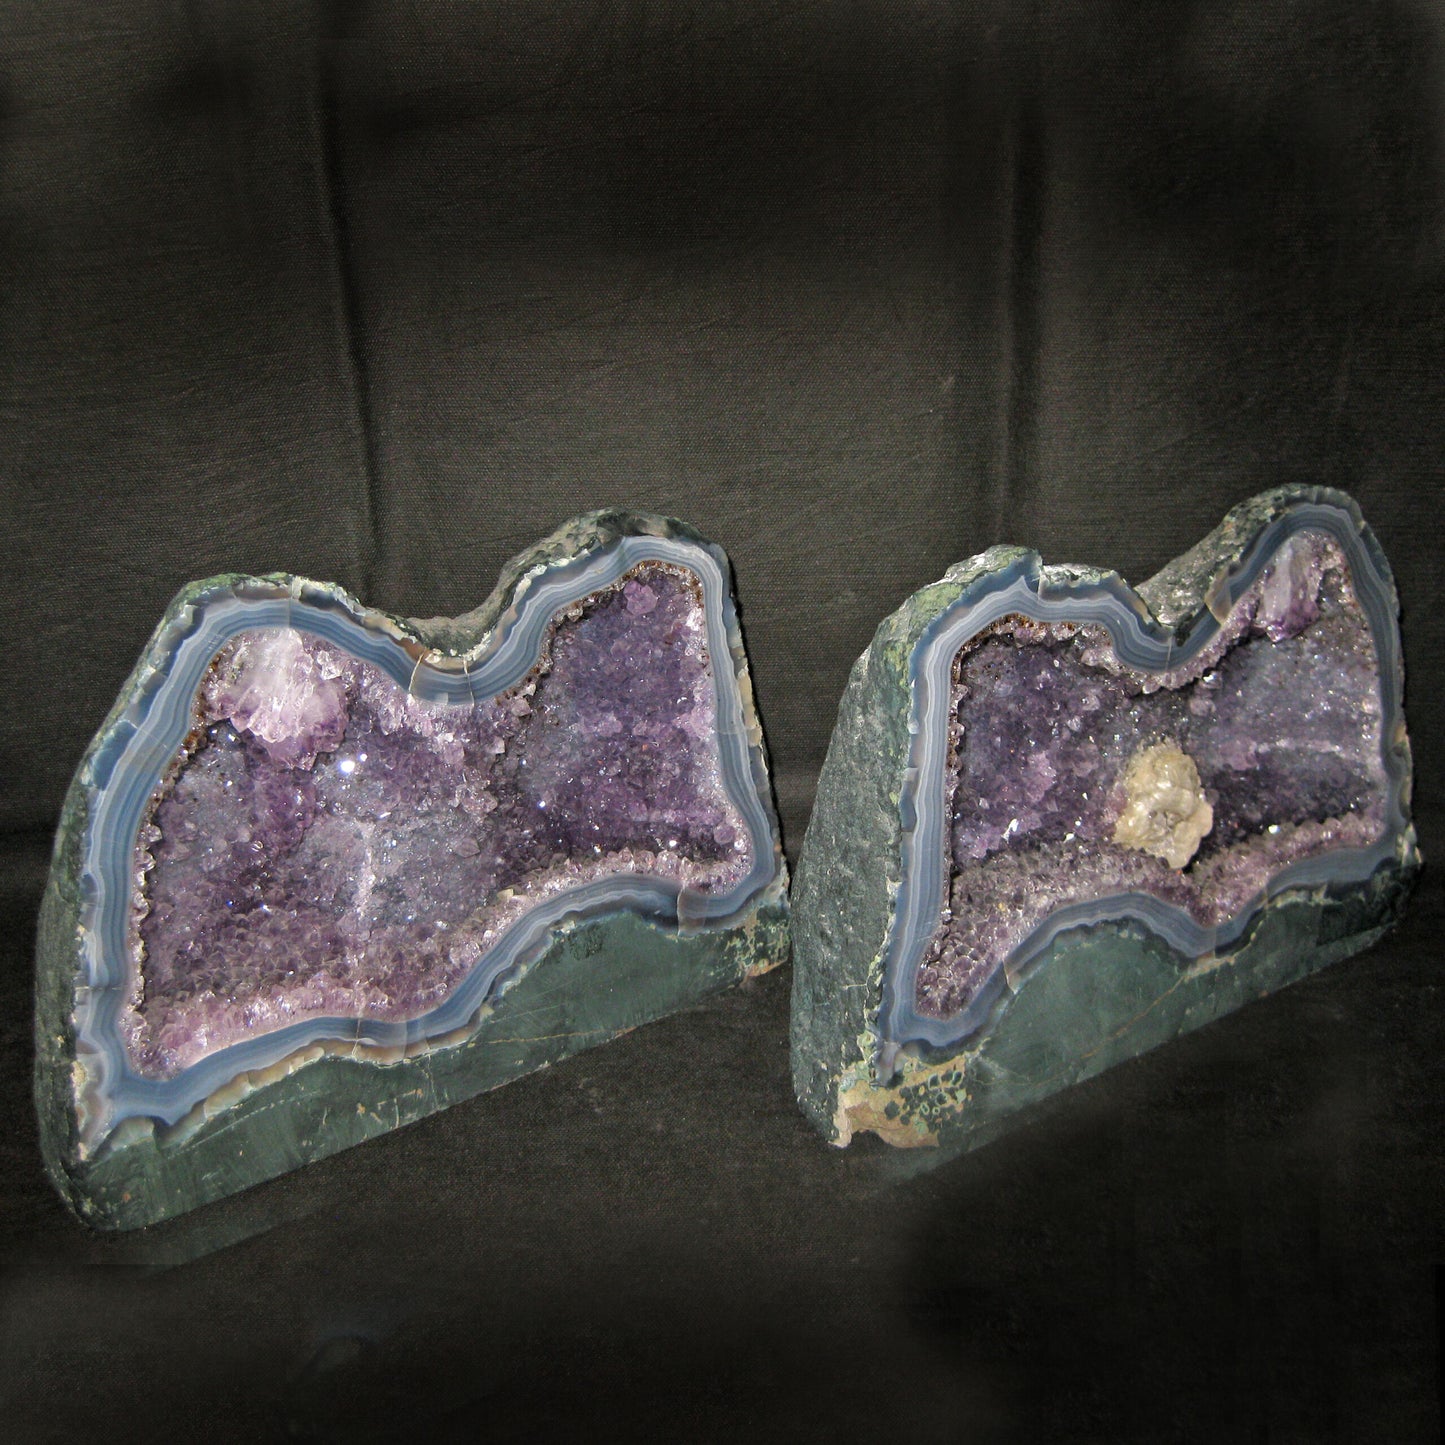 Amethyst split geode